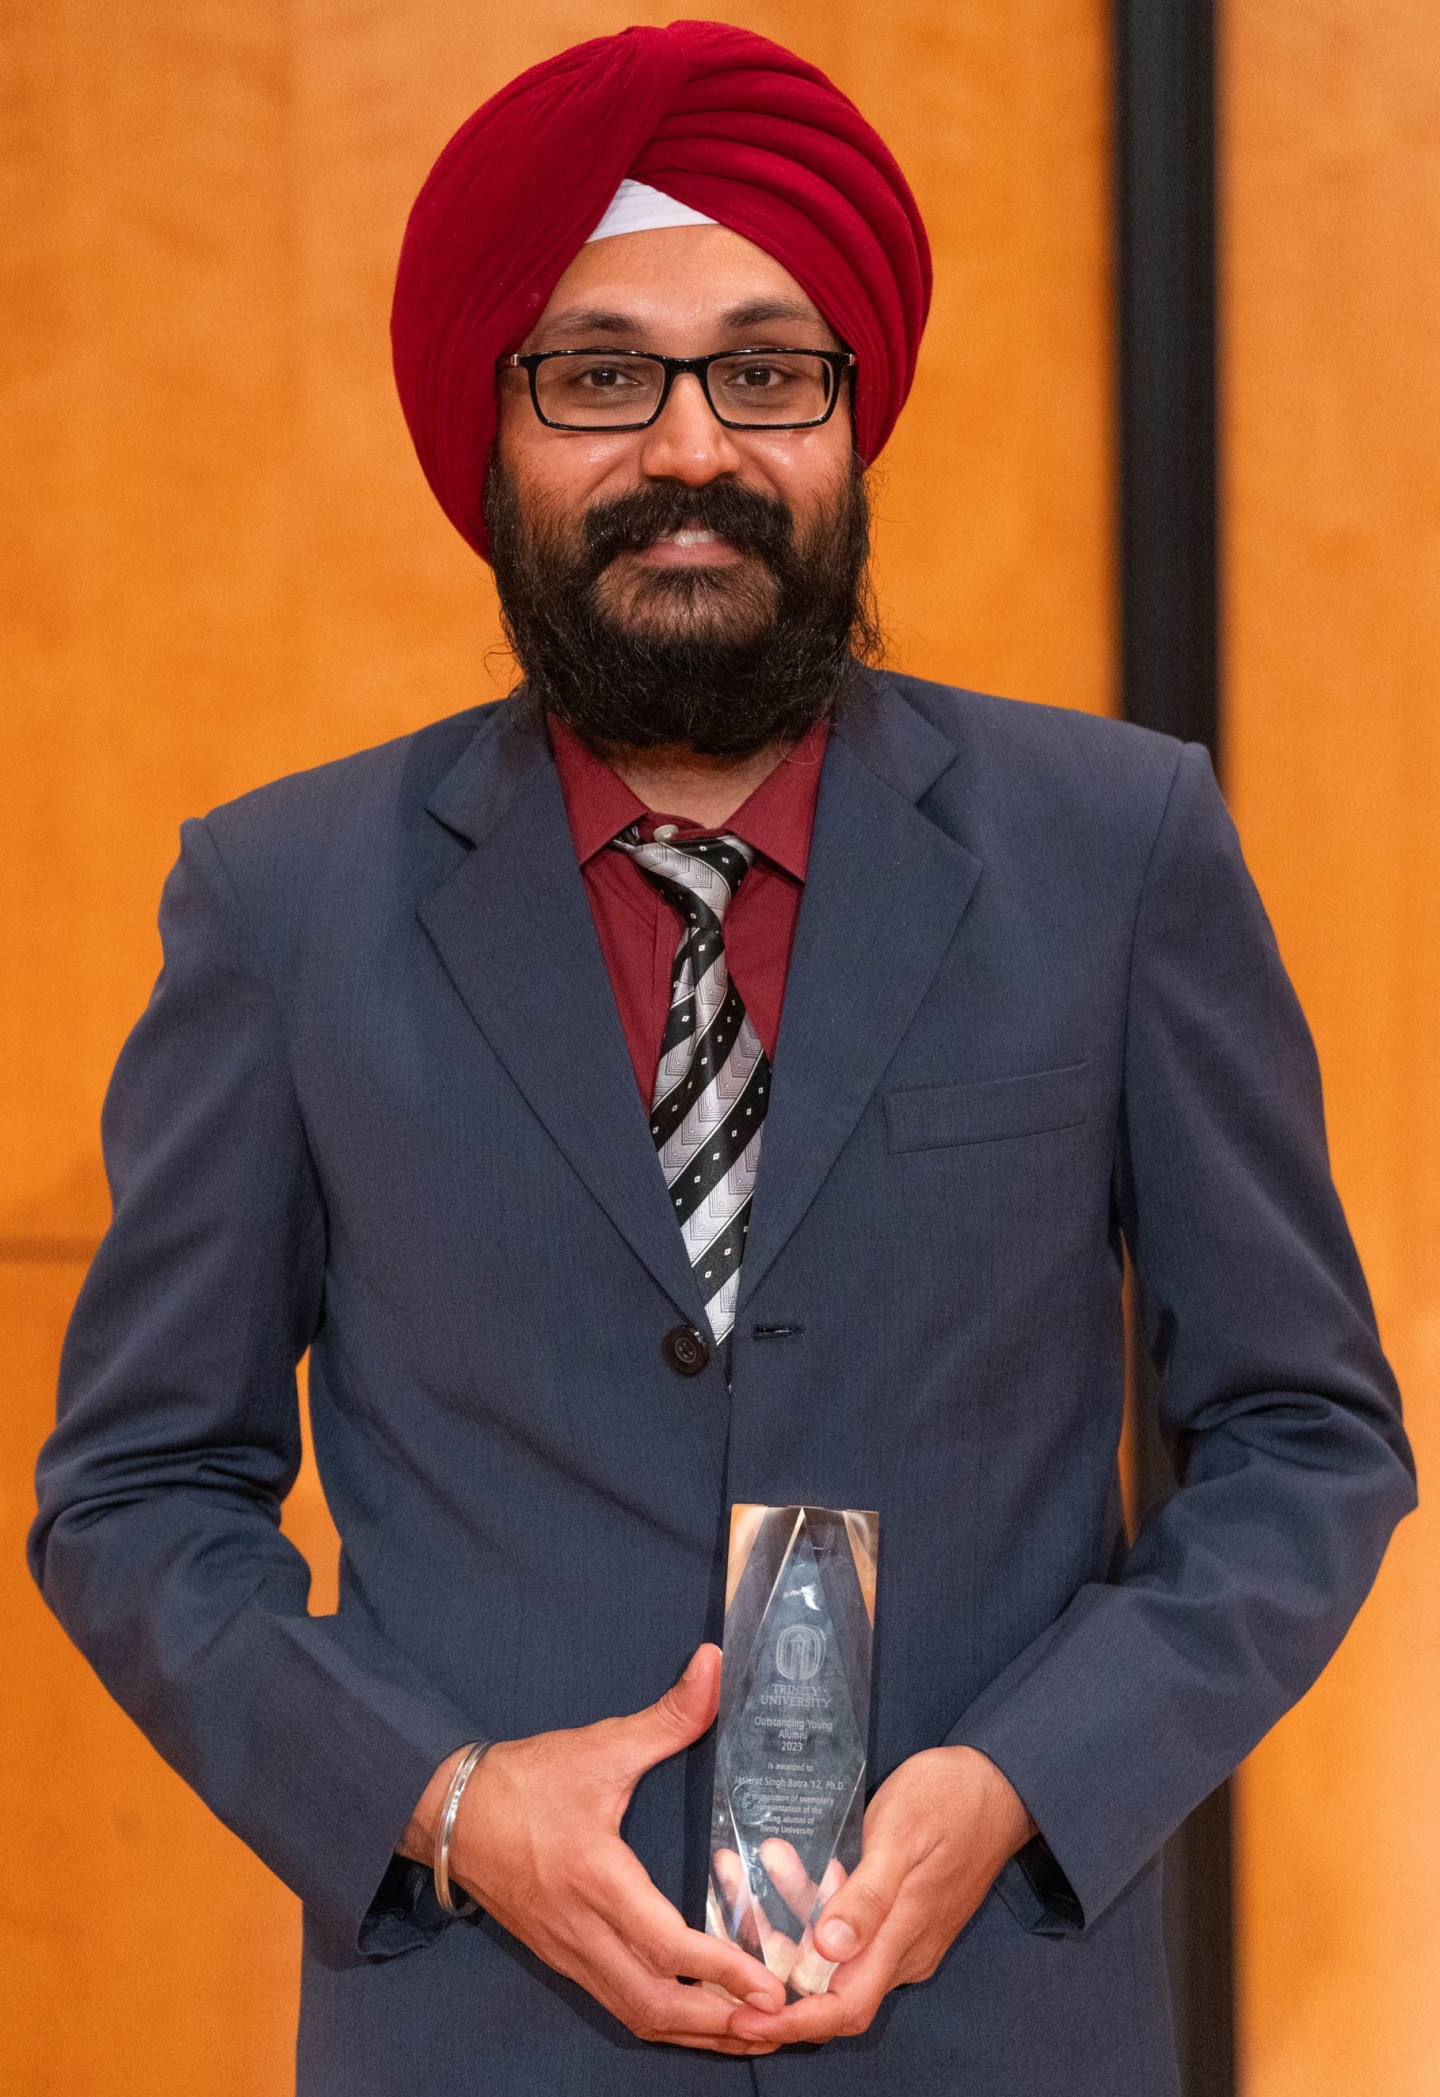 Photo of Jaskirat Singh Batra '12, Ph.D. holding an Alumni Award